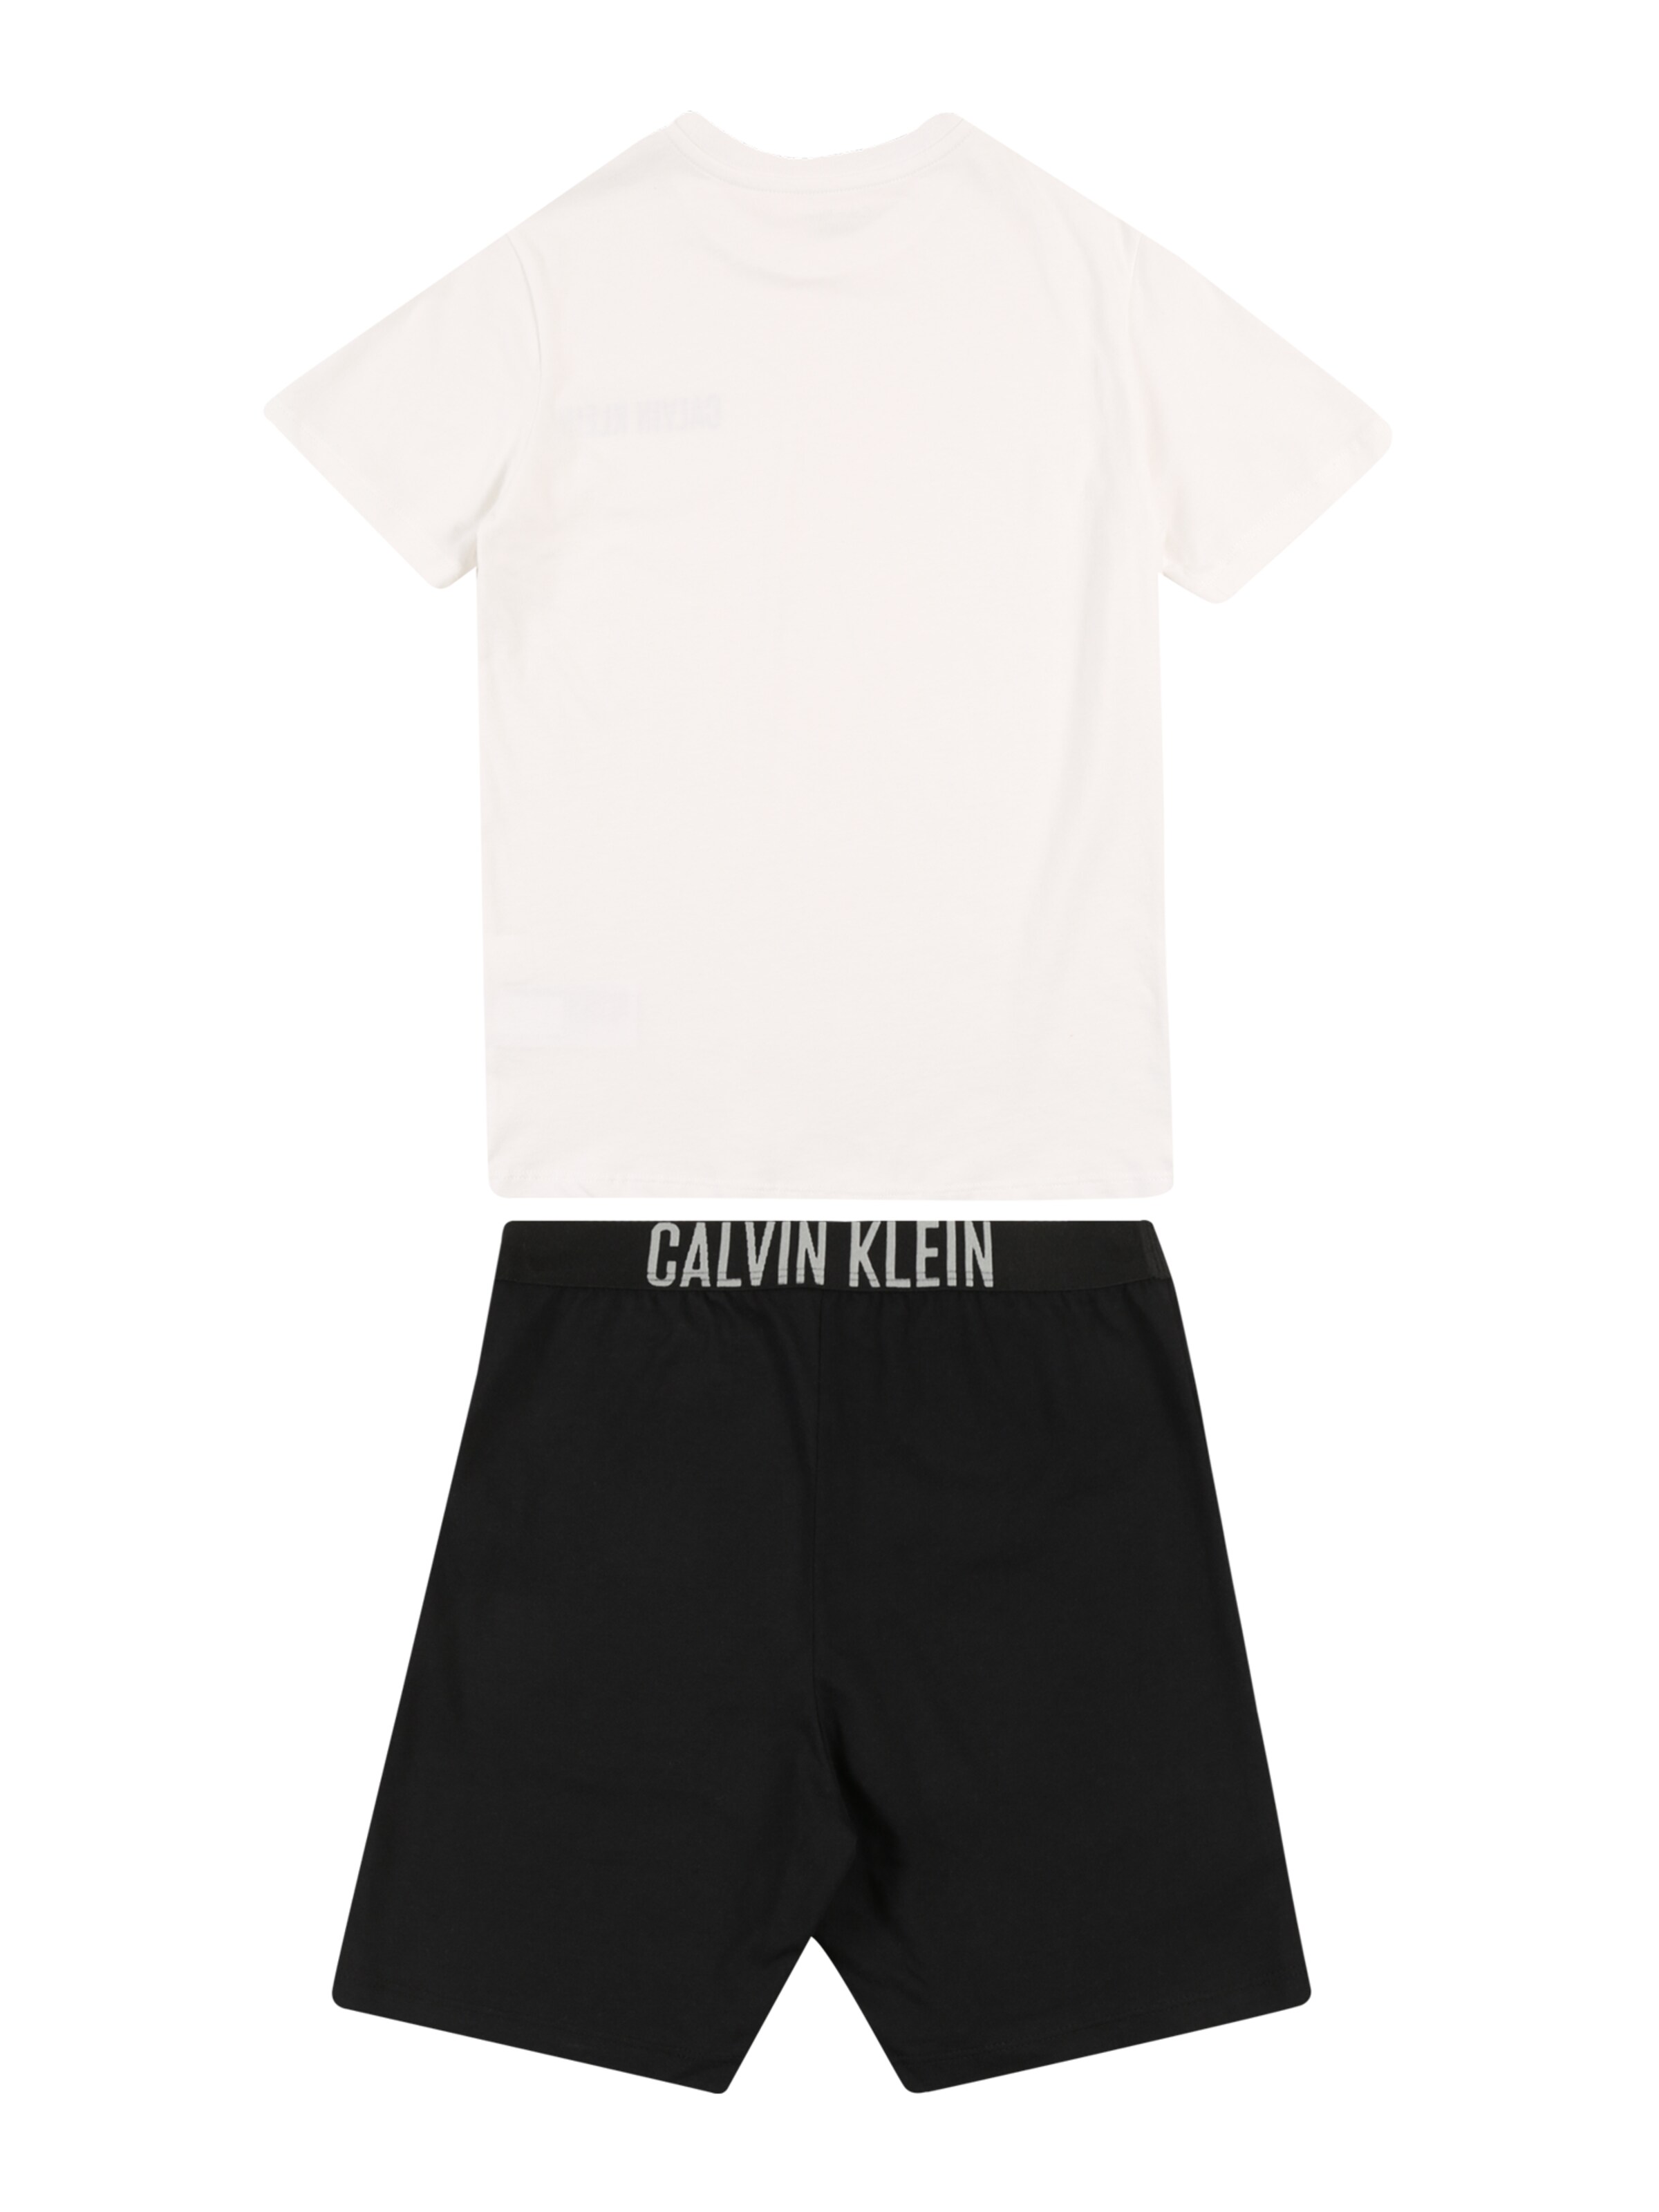 Kinder Teens (Gr. 140-176) Calvin Klein Underwear Pyjamaset in Schwarz, Weiß - AP22737